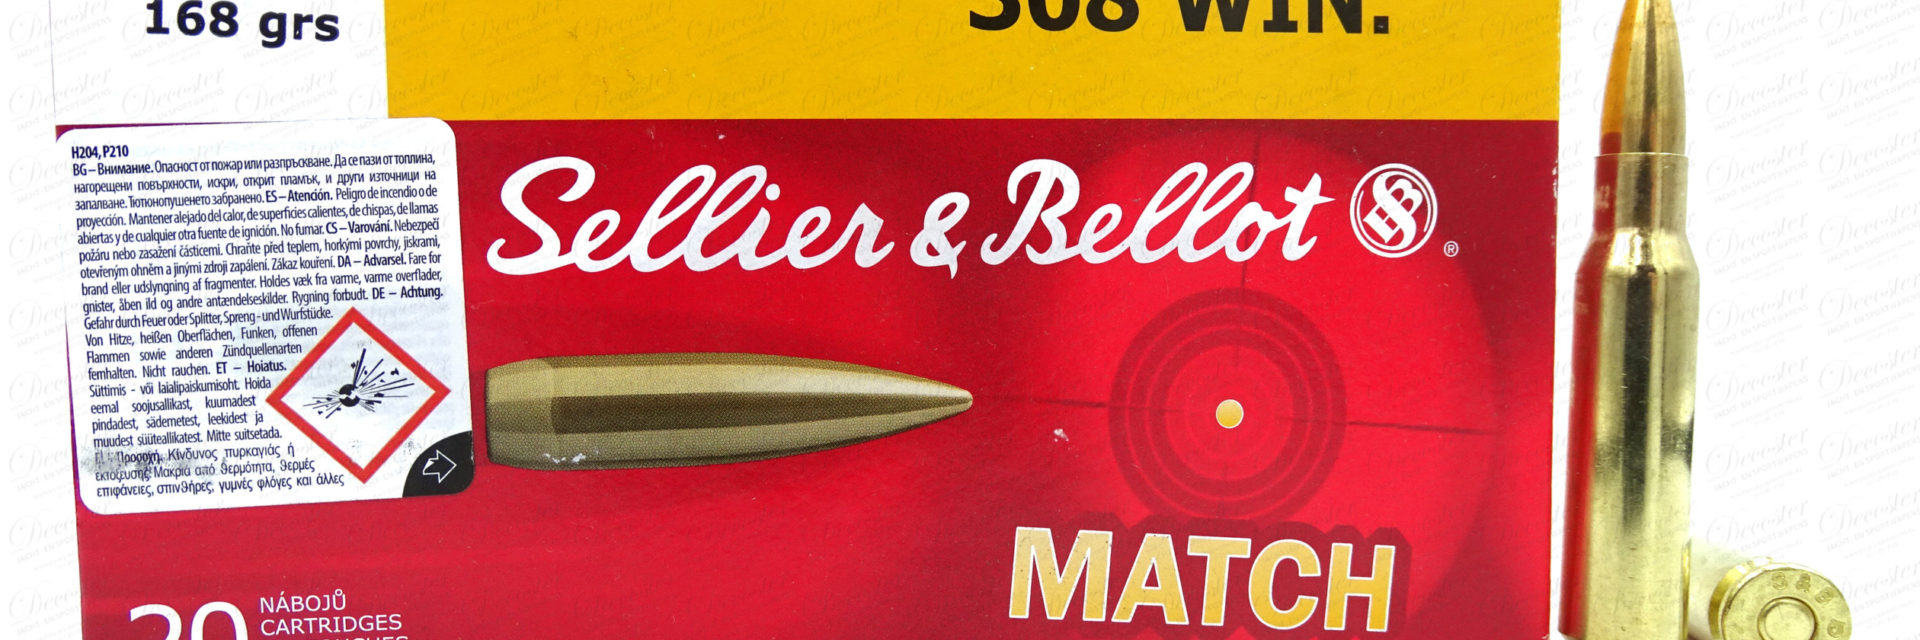 Selier&Bellot Match 308